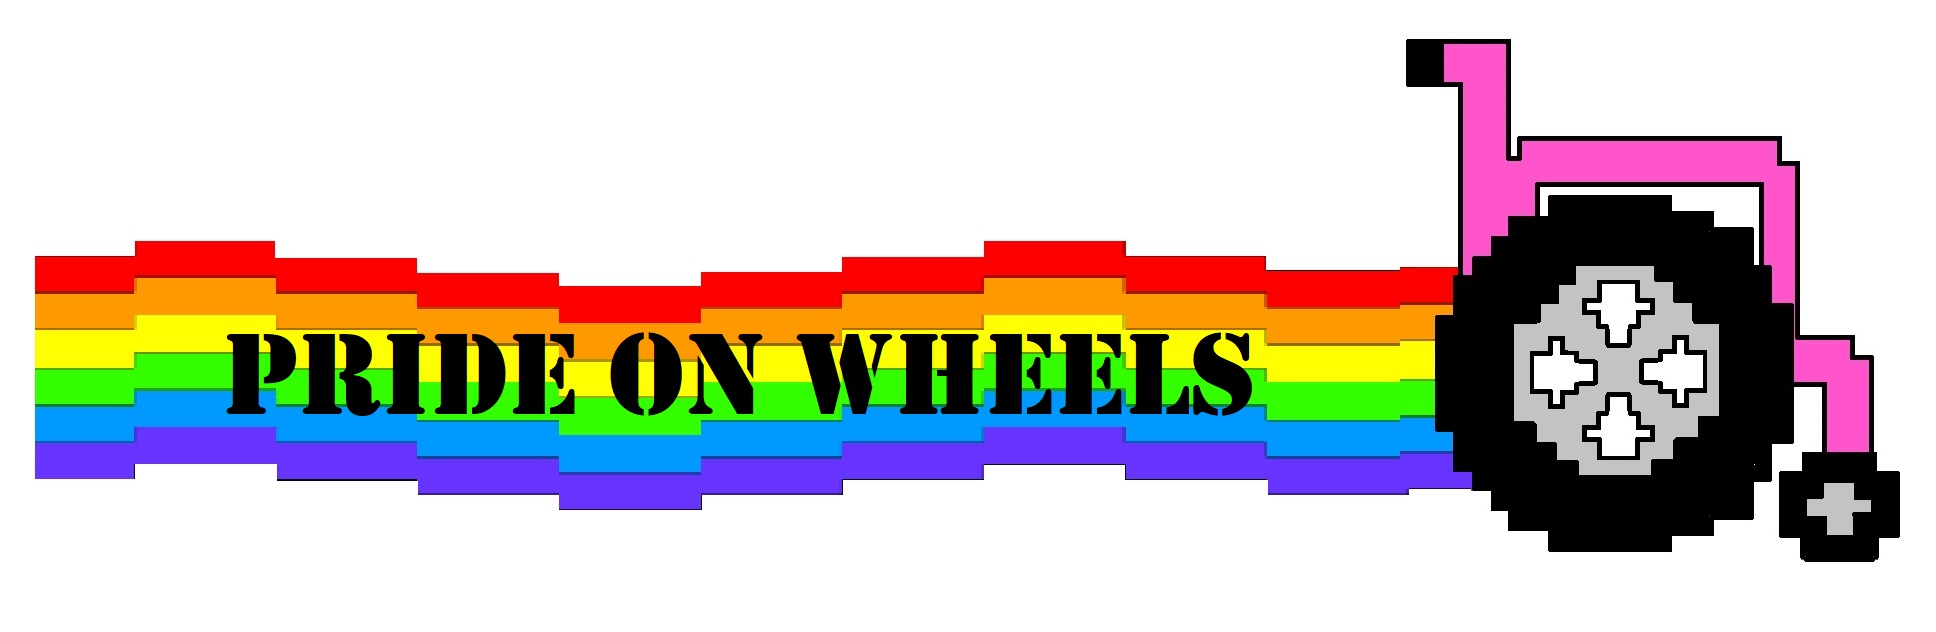 Pride on Wheels